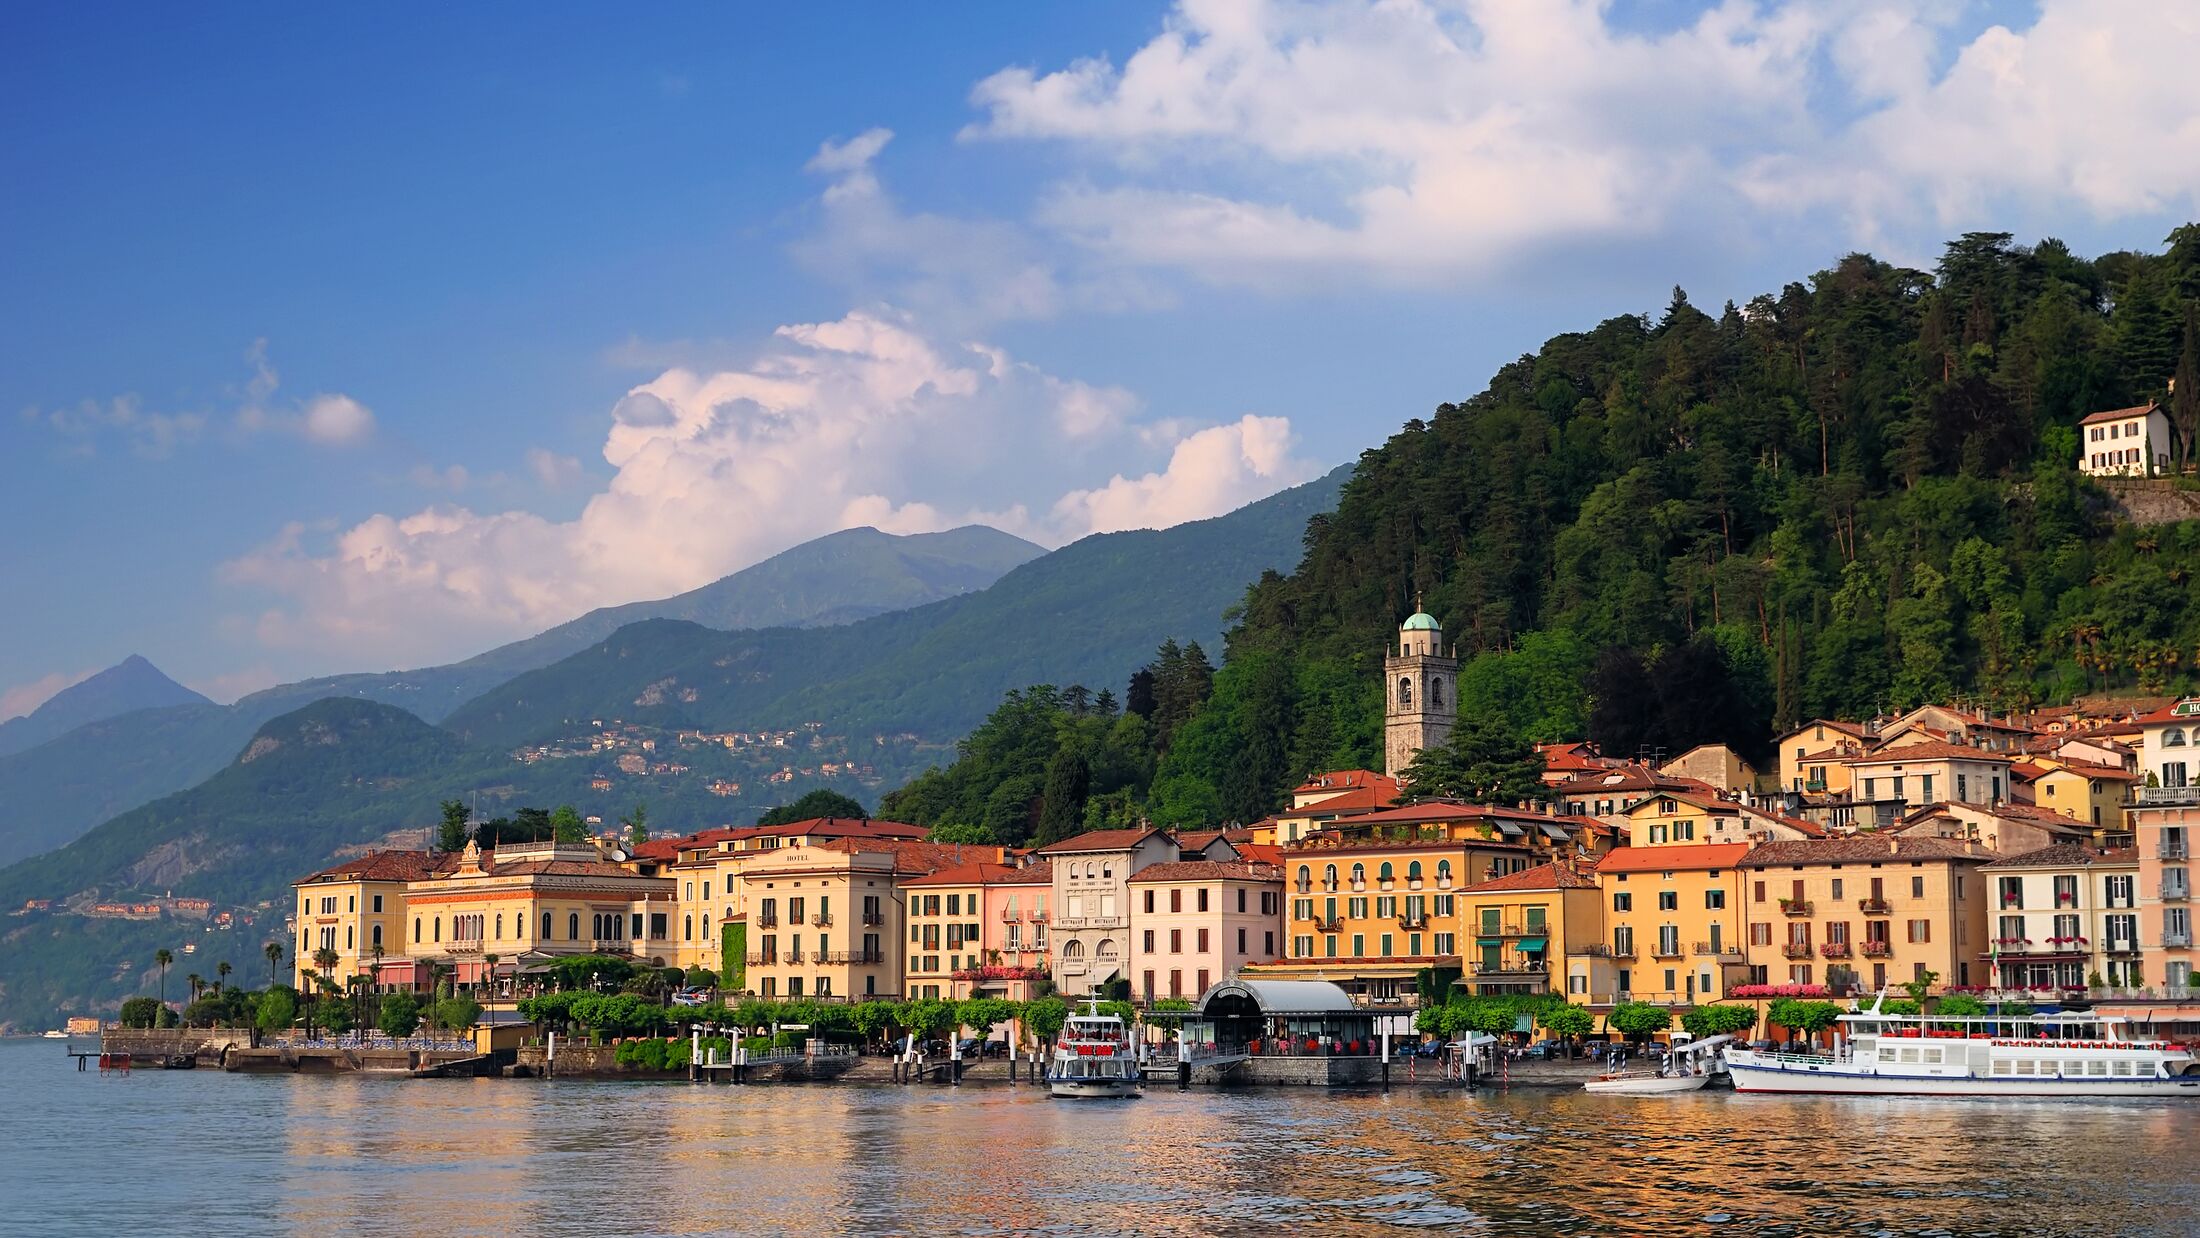 Bellagio peninsula seen from Lake Como